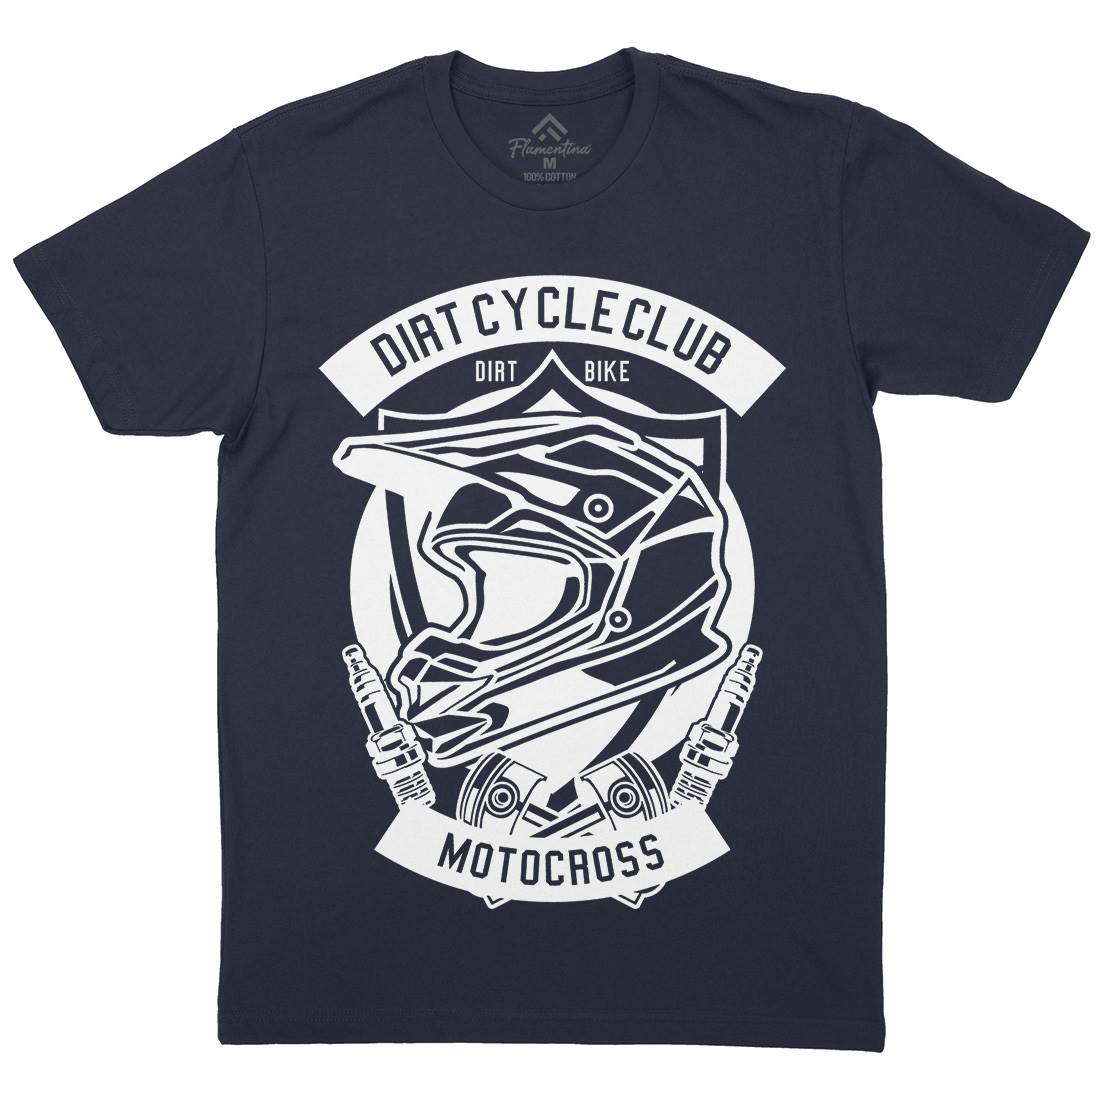 Dirty Cycle Club Mens Organic Crew Neck T-Shirt Motorcycles B532